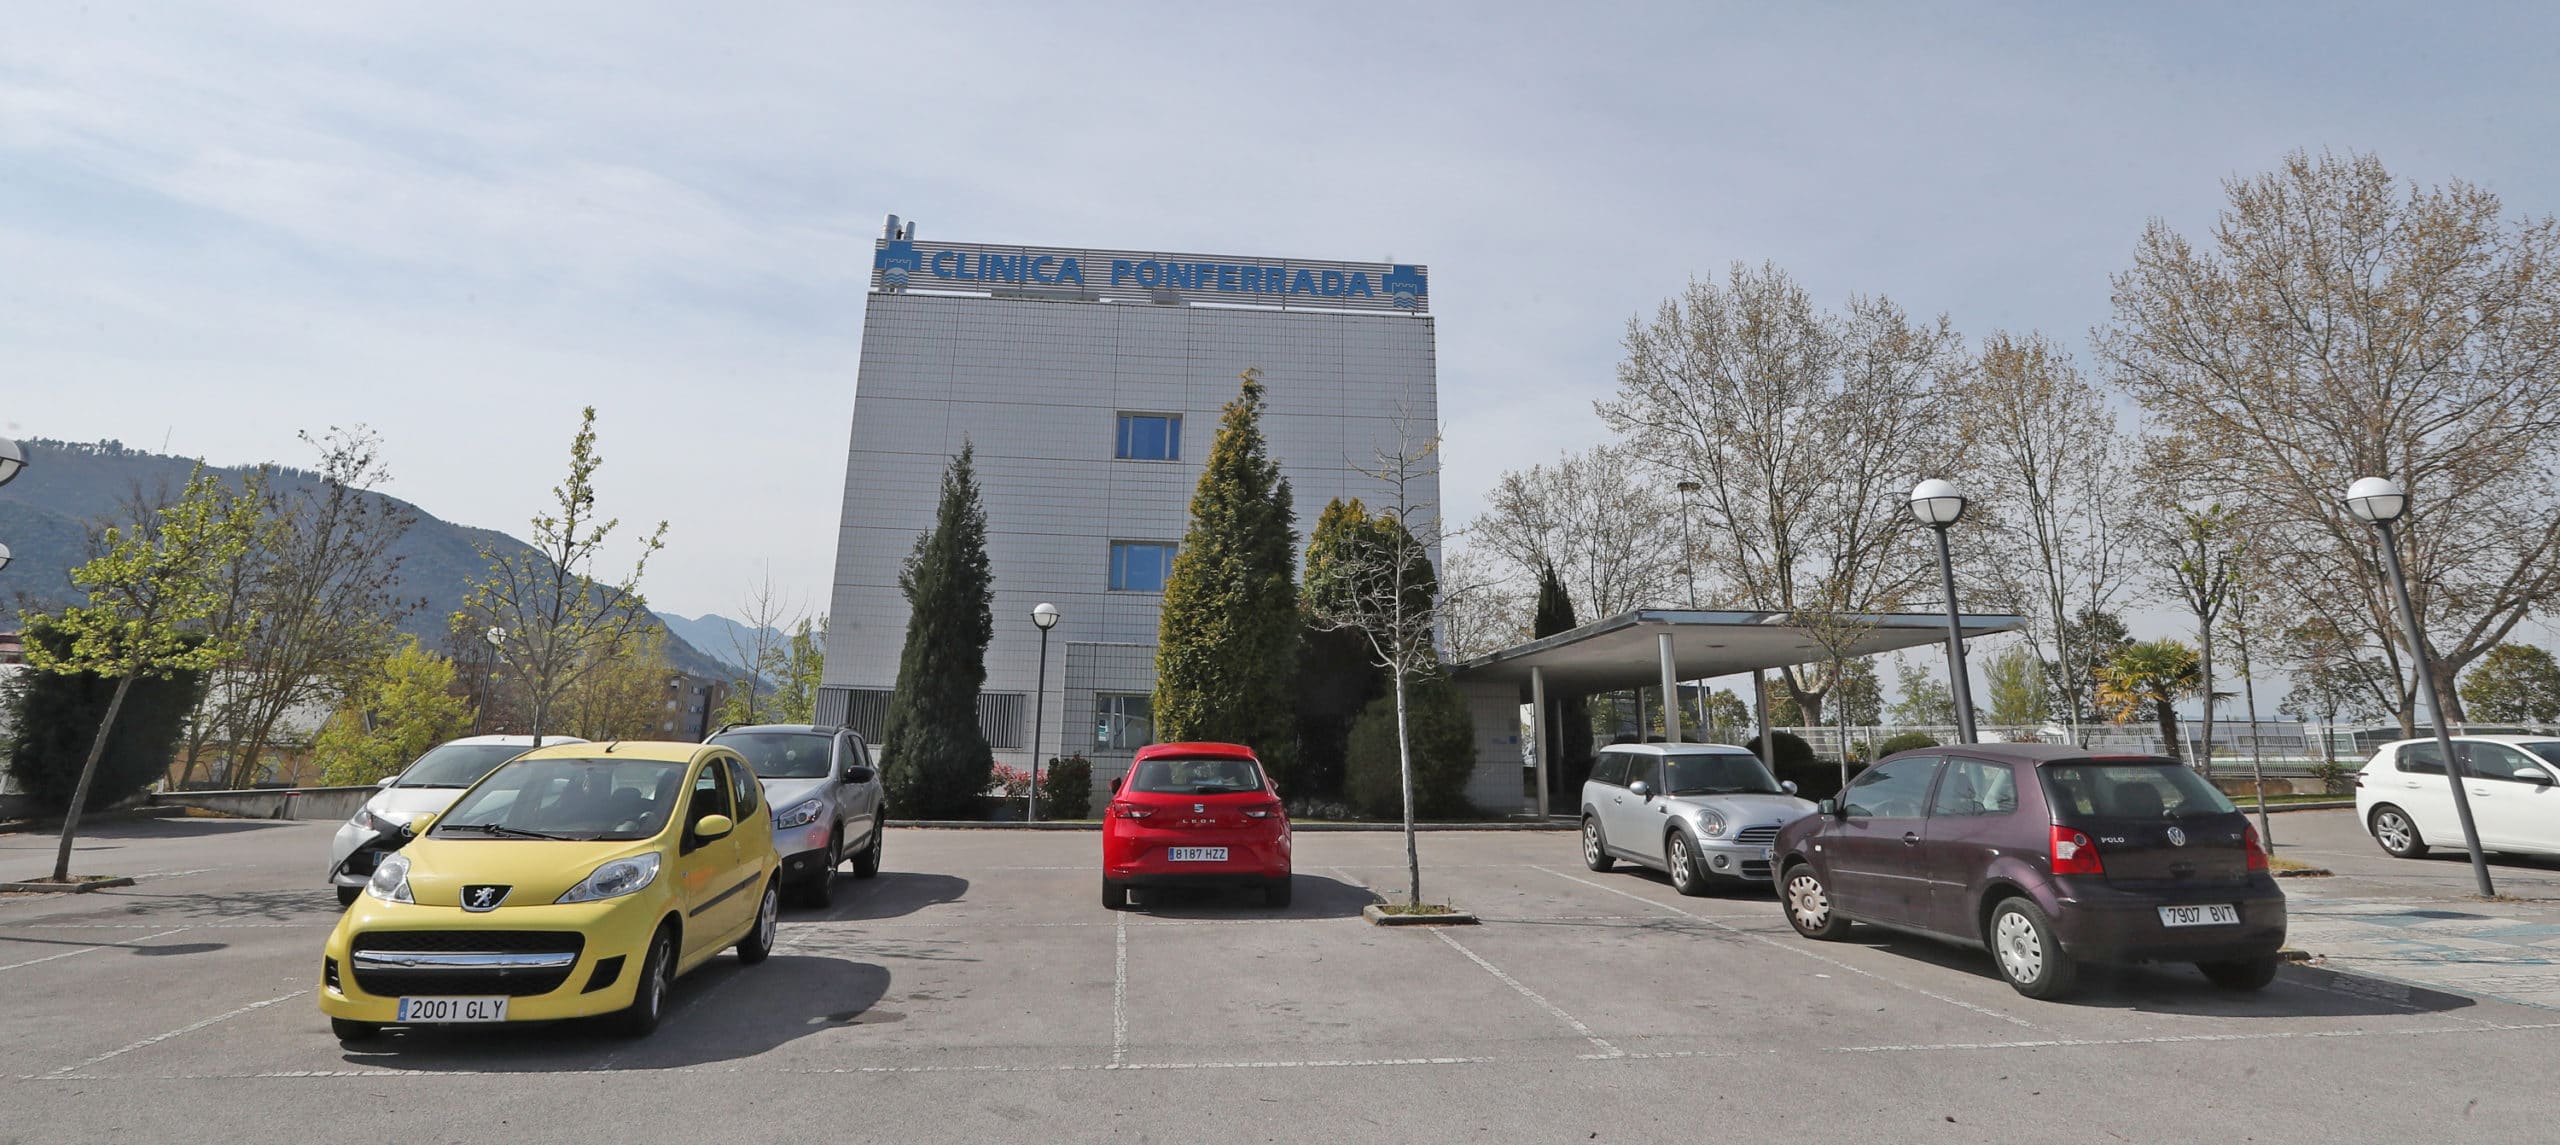 Recoletas abre el servicio de Oftalmología de Clínica Ponferrada tras invertir 200.000 euros